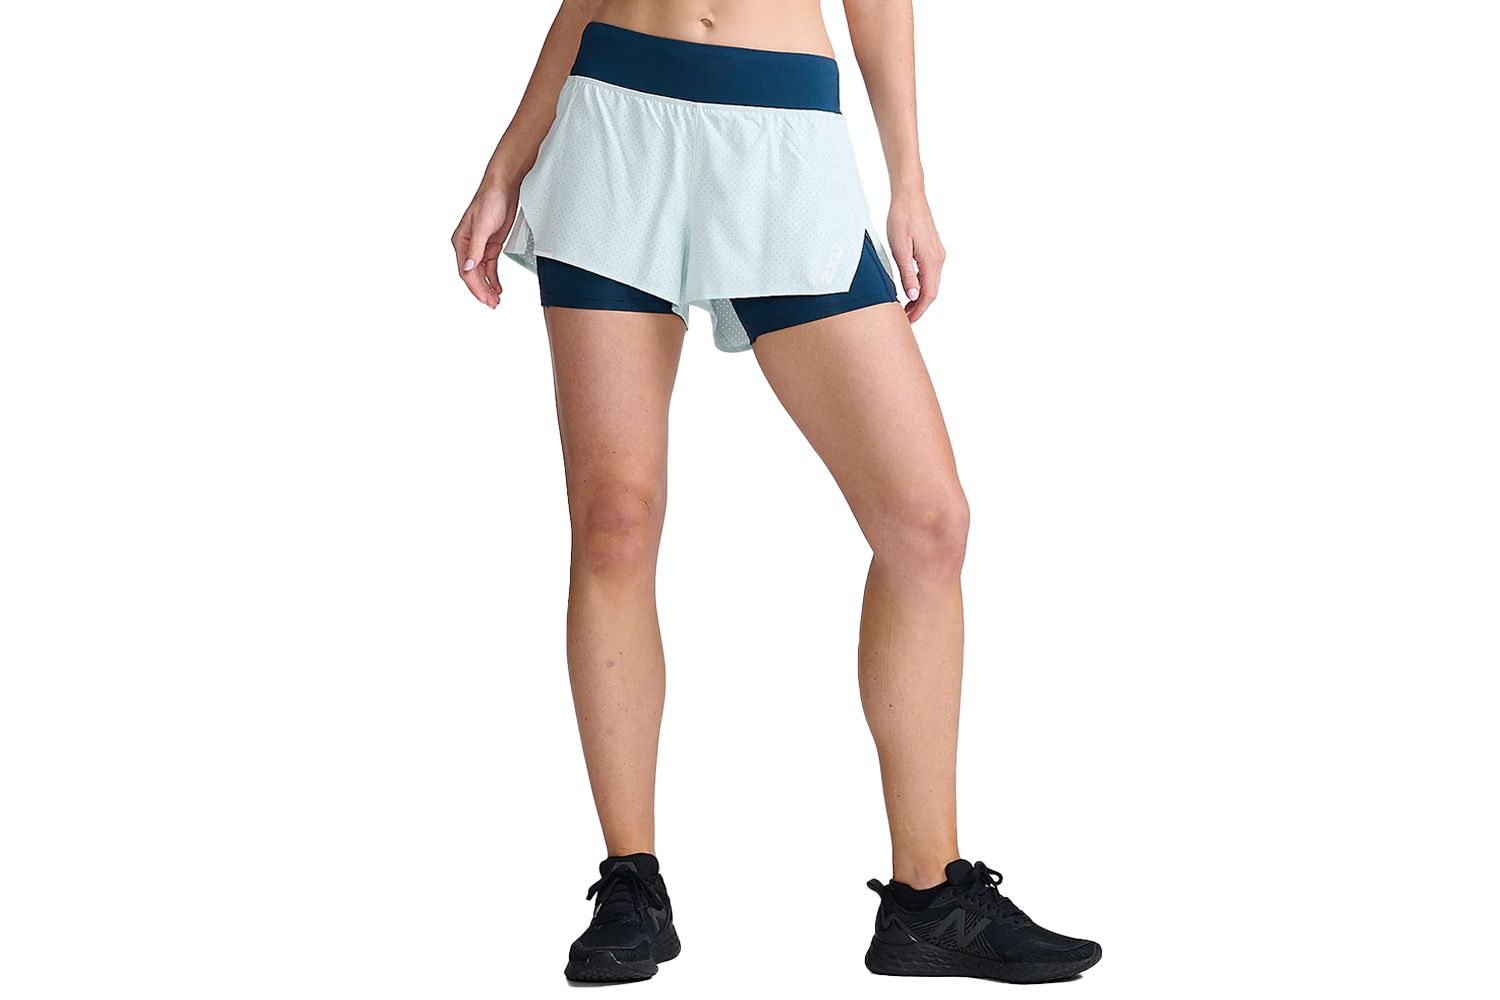 9 Amazing Girls Athletic Shorts Size 14 For 2023